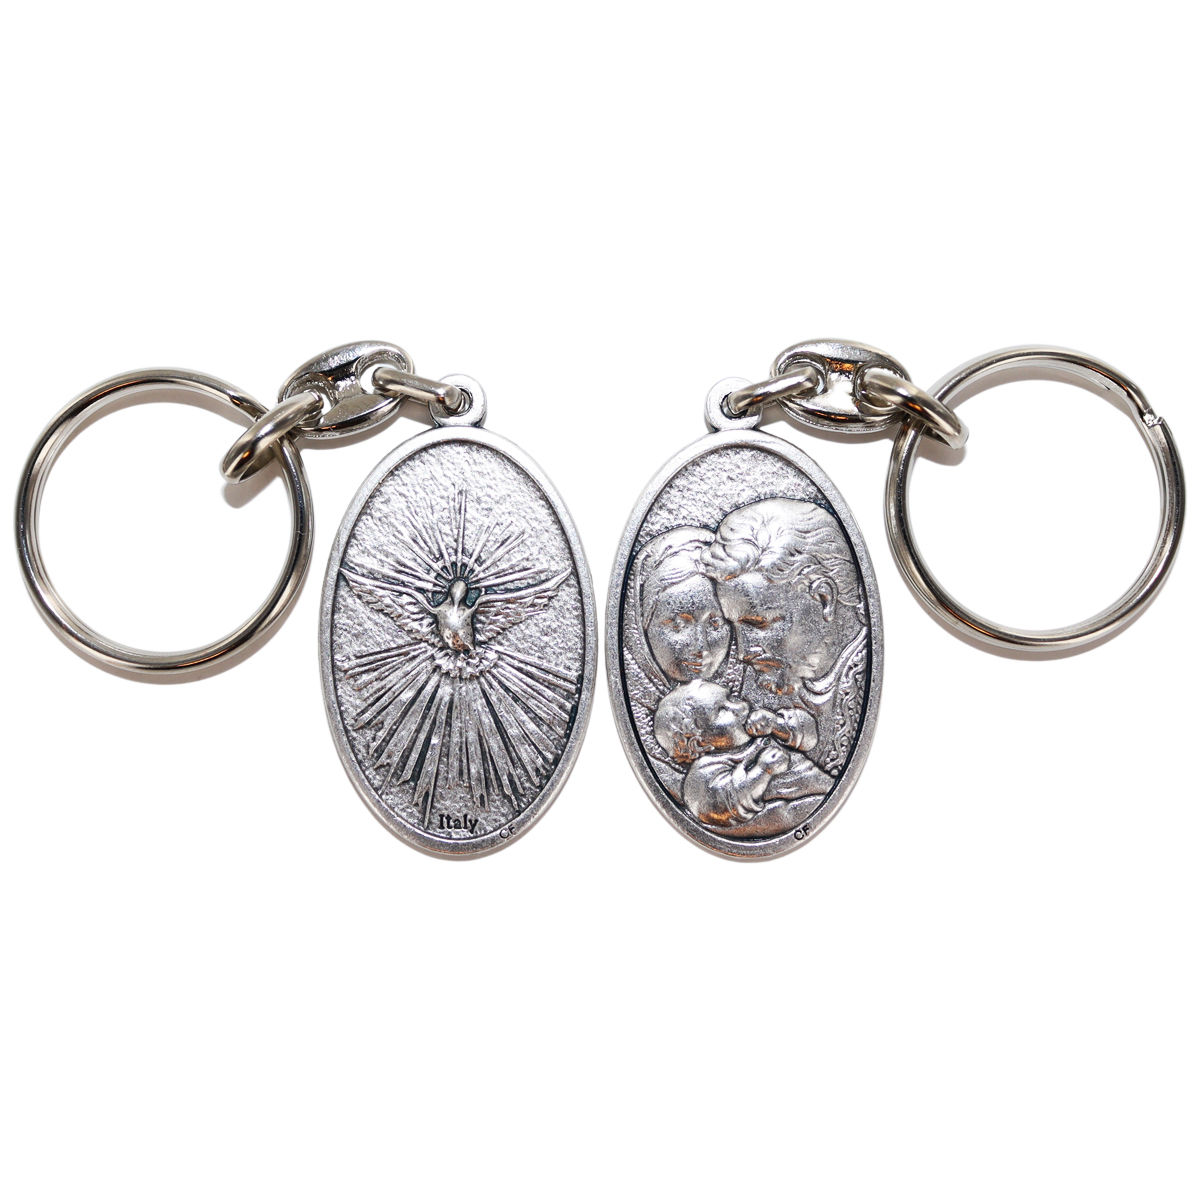 Porte-clés H. 4.5 cm en métal couleur argentée, plusieurs saints.